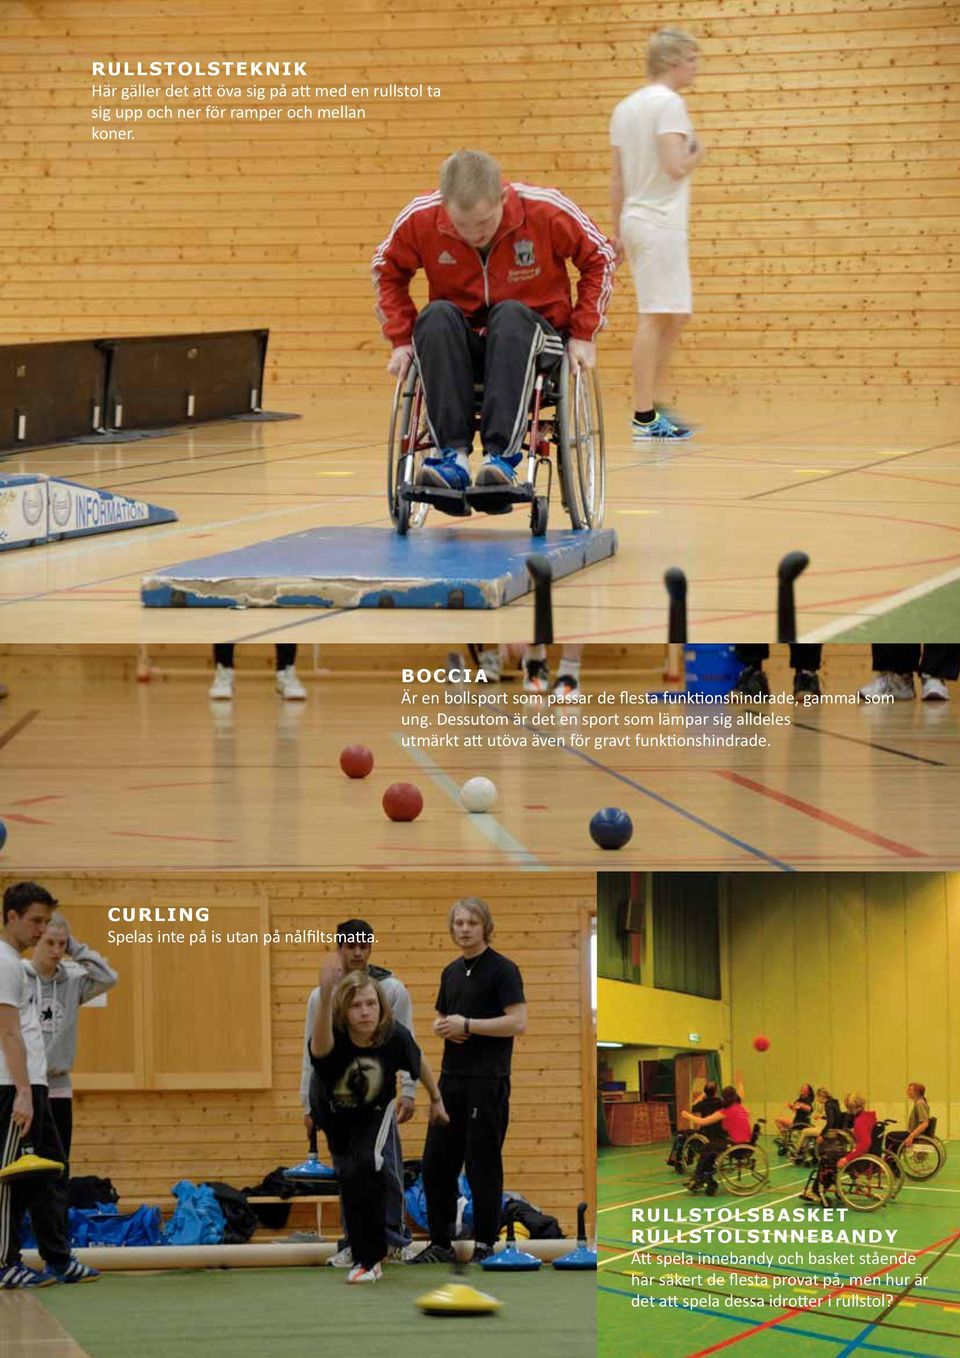 Dessutom är det en sport som lämpar sig alldeles utmärkt att utöva även för gravt funktionshindrade.